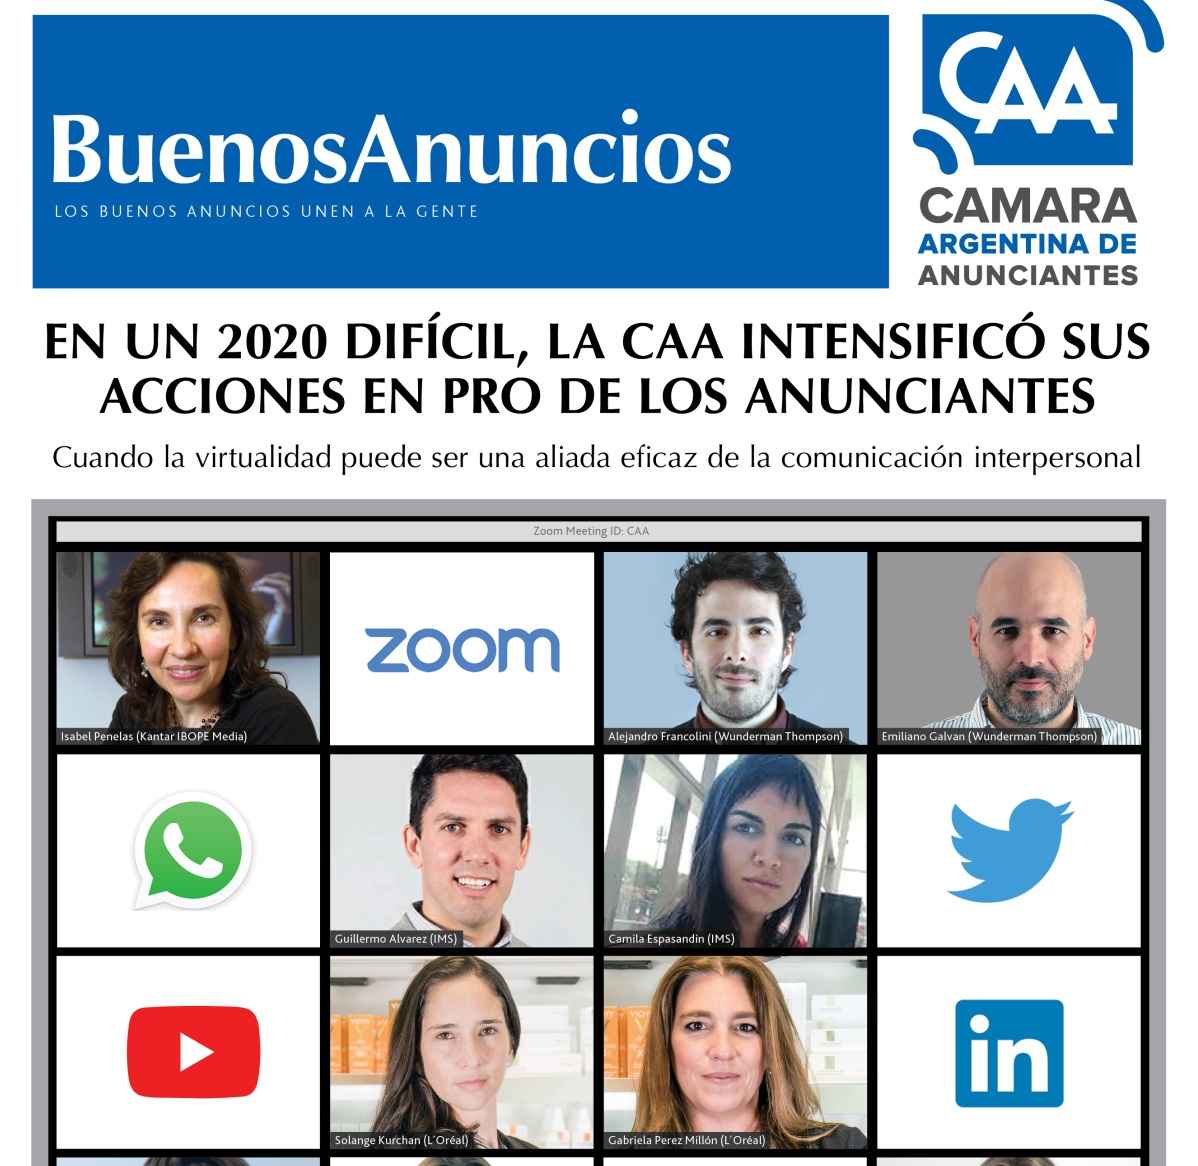 Portada de La Cámara Argentina de Anunciantes presentó la edición digital de su revista institucional Buenos Anuncios 36